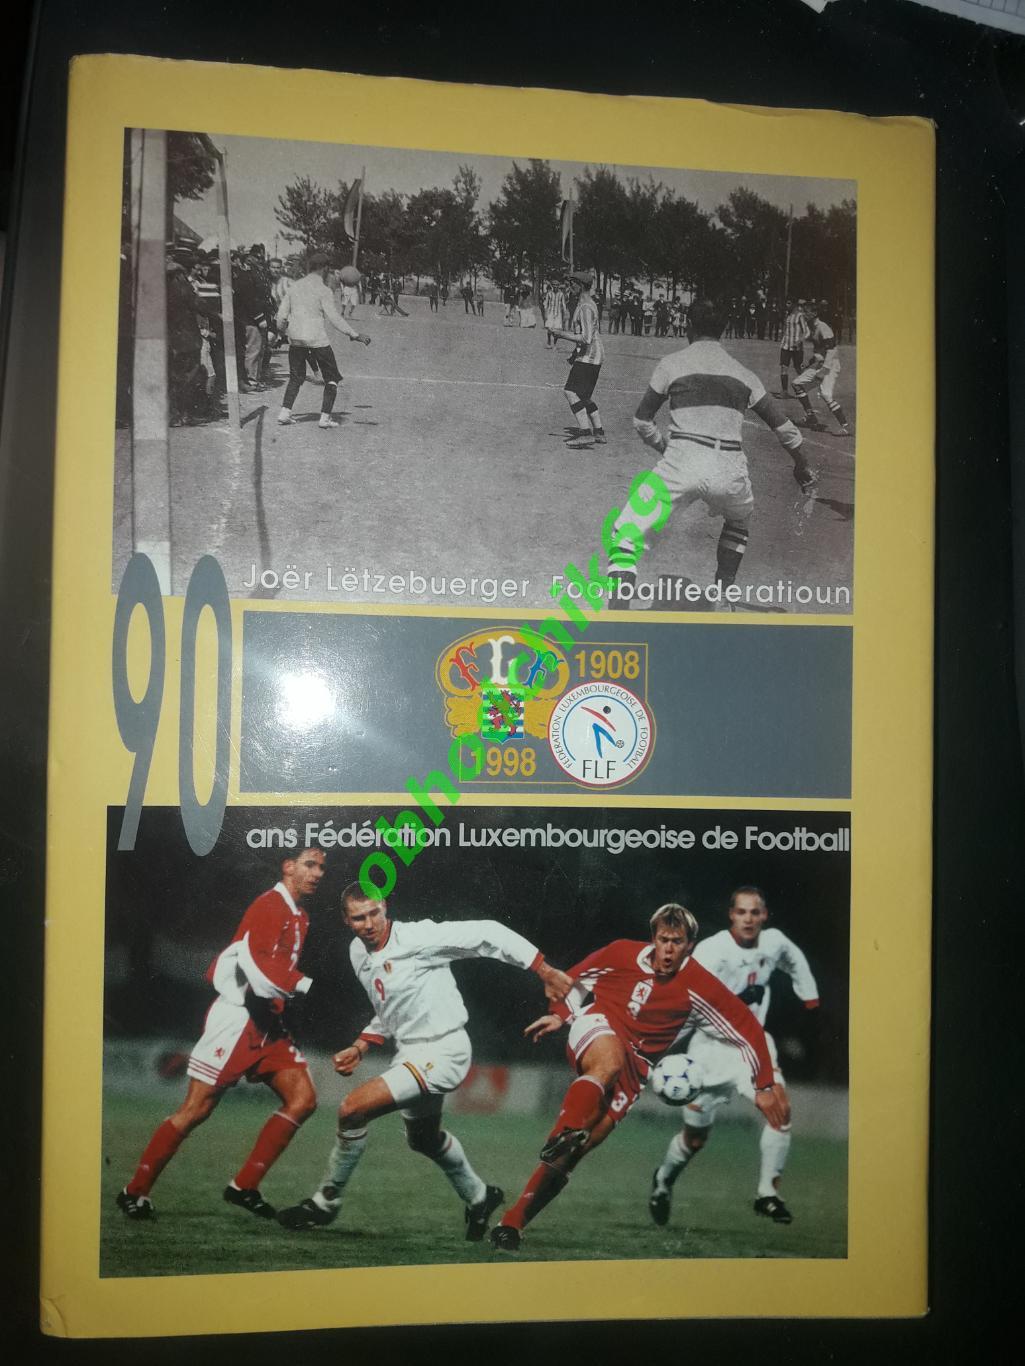 90 лет Футбольной ассоциации Люксембурга_1908-1998